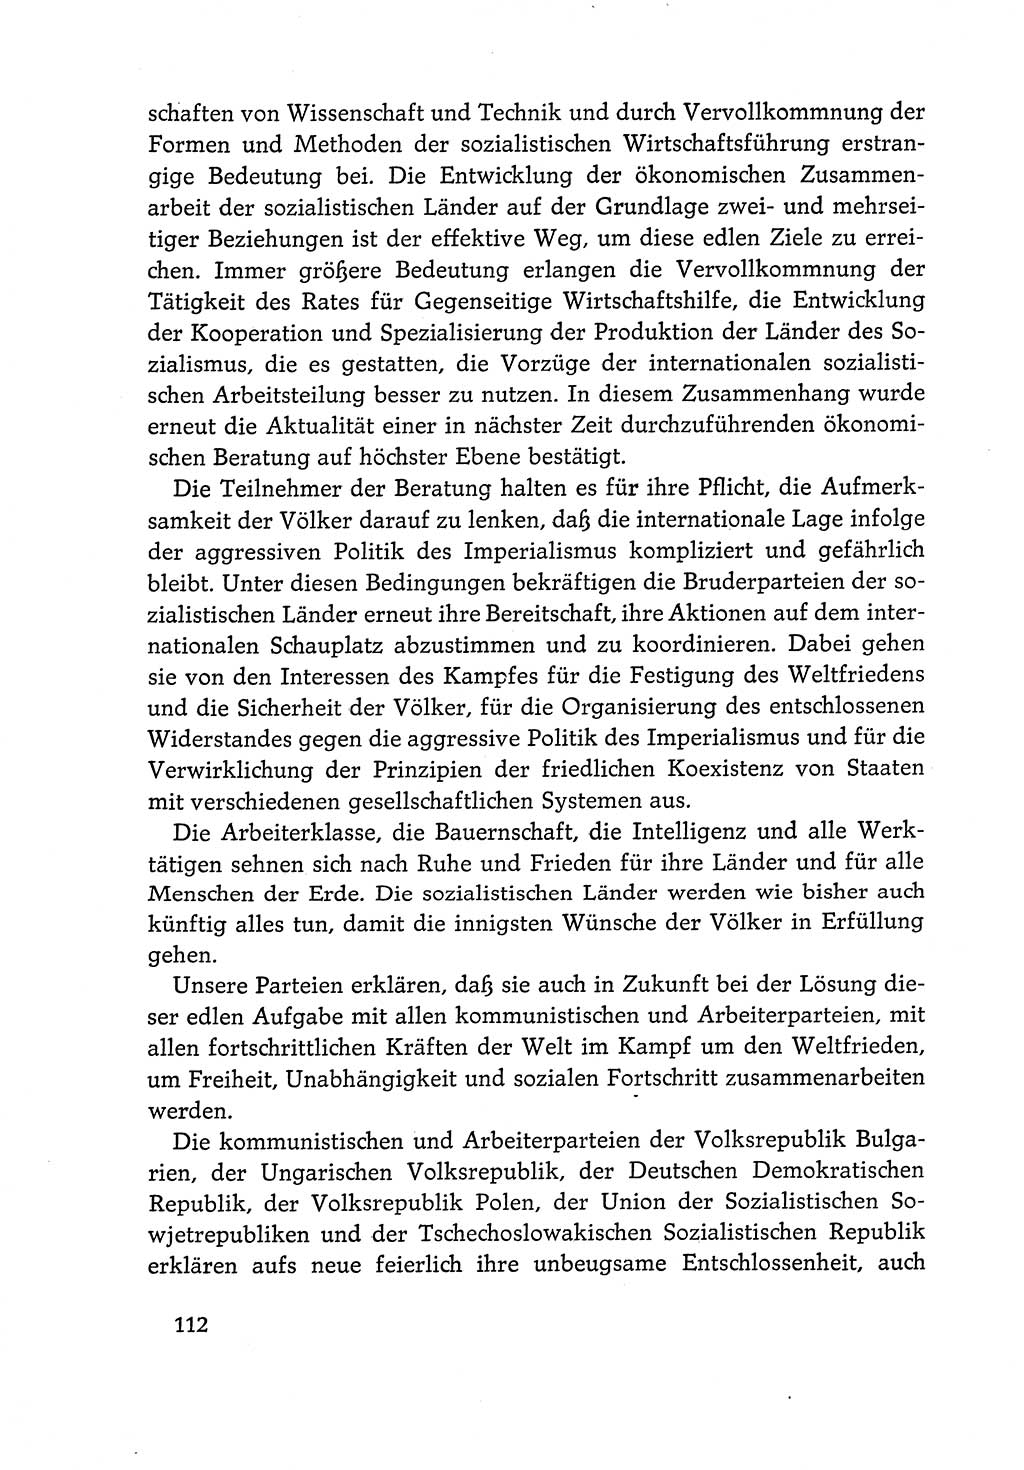 Dokumente der Sozialistischen Einheitspartei Deutschlands (SED) [Deutsche Demokratische Republik (DDR)] 1968-1969, Seite 112 (Dok. SED DDR 1968-1969, S. 112)